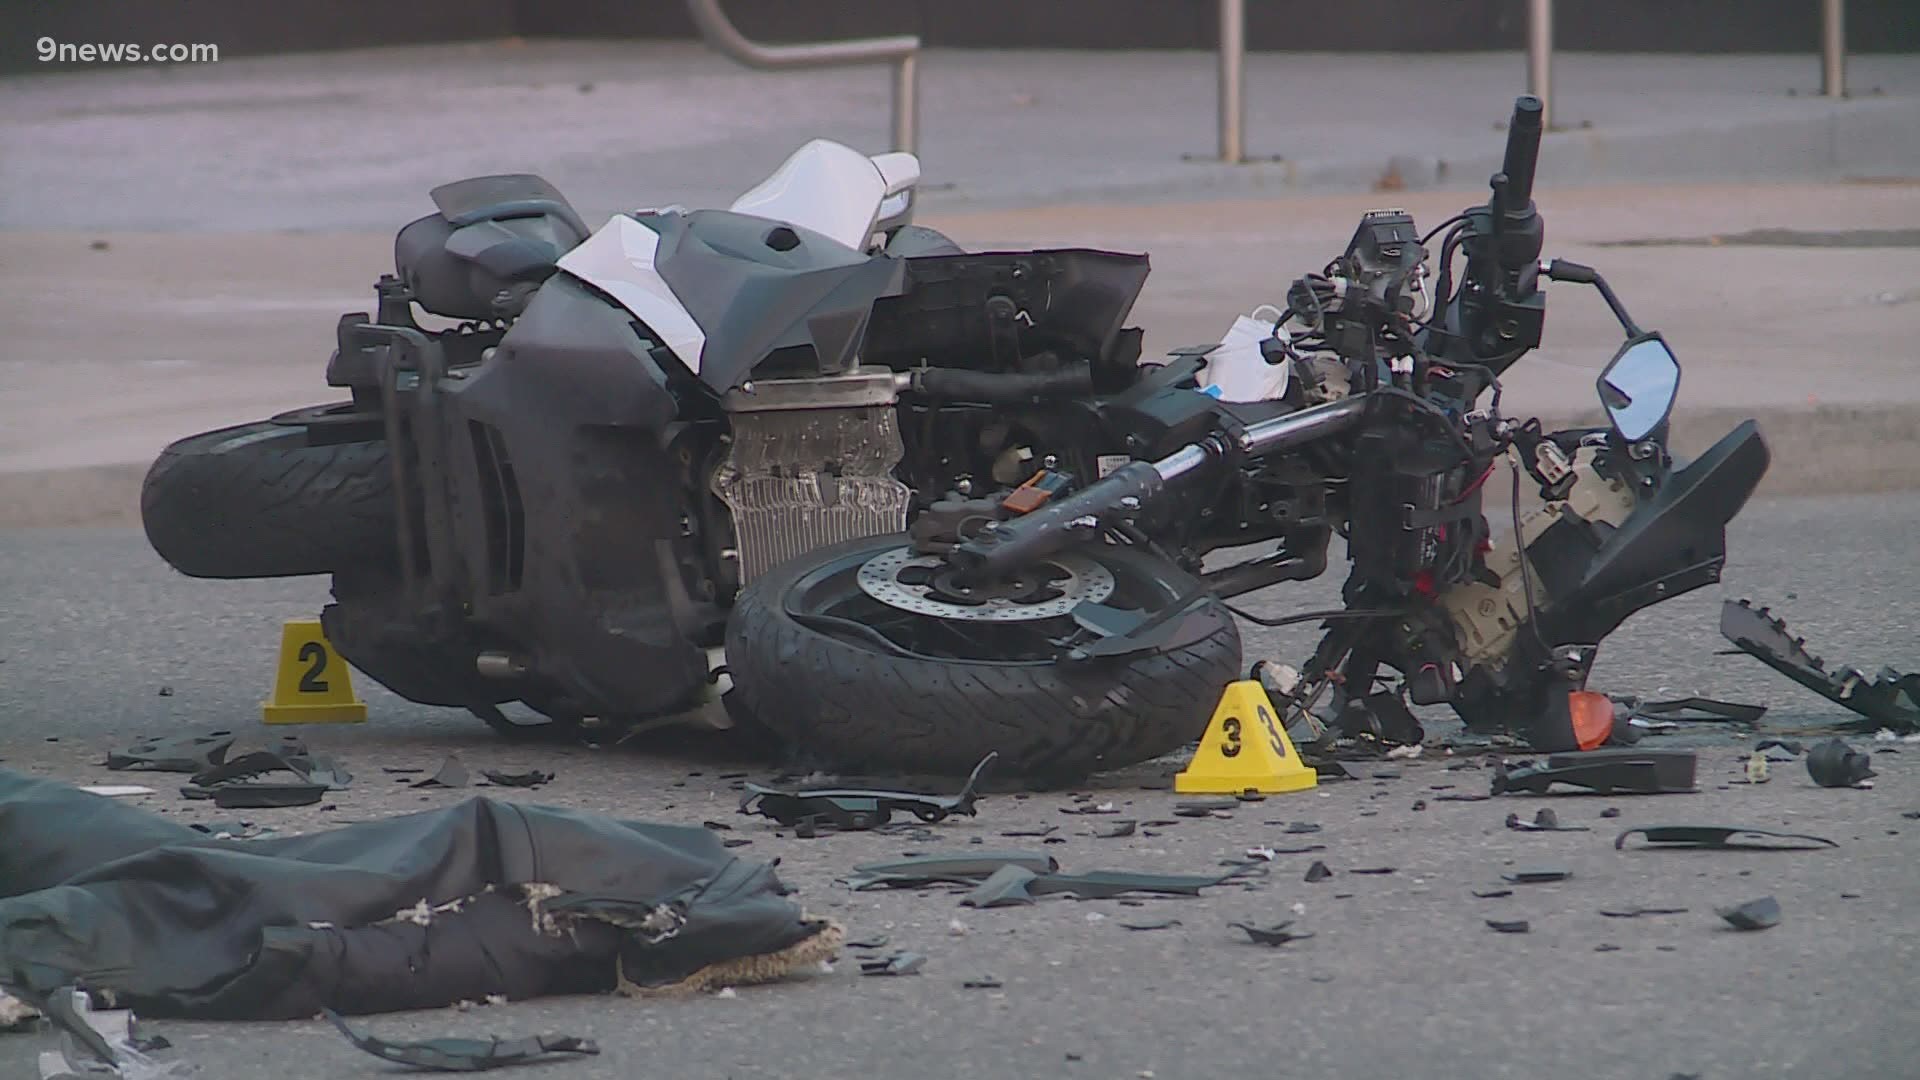 Crash involving Denver officer sends motorcyclist to hospital Friday